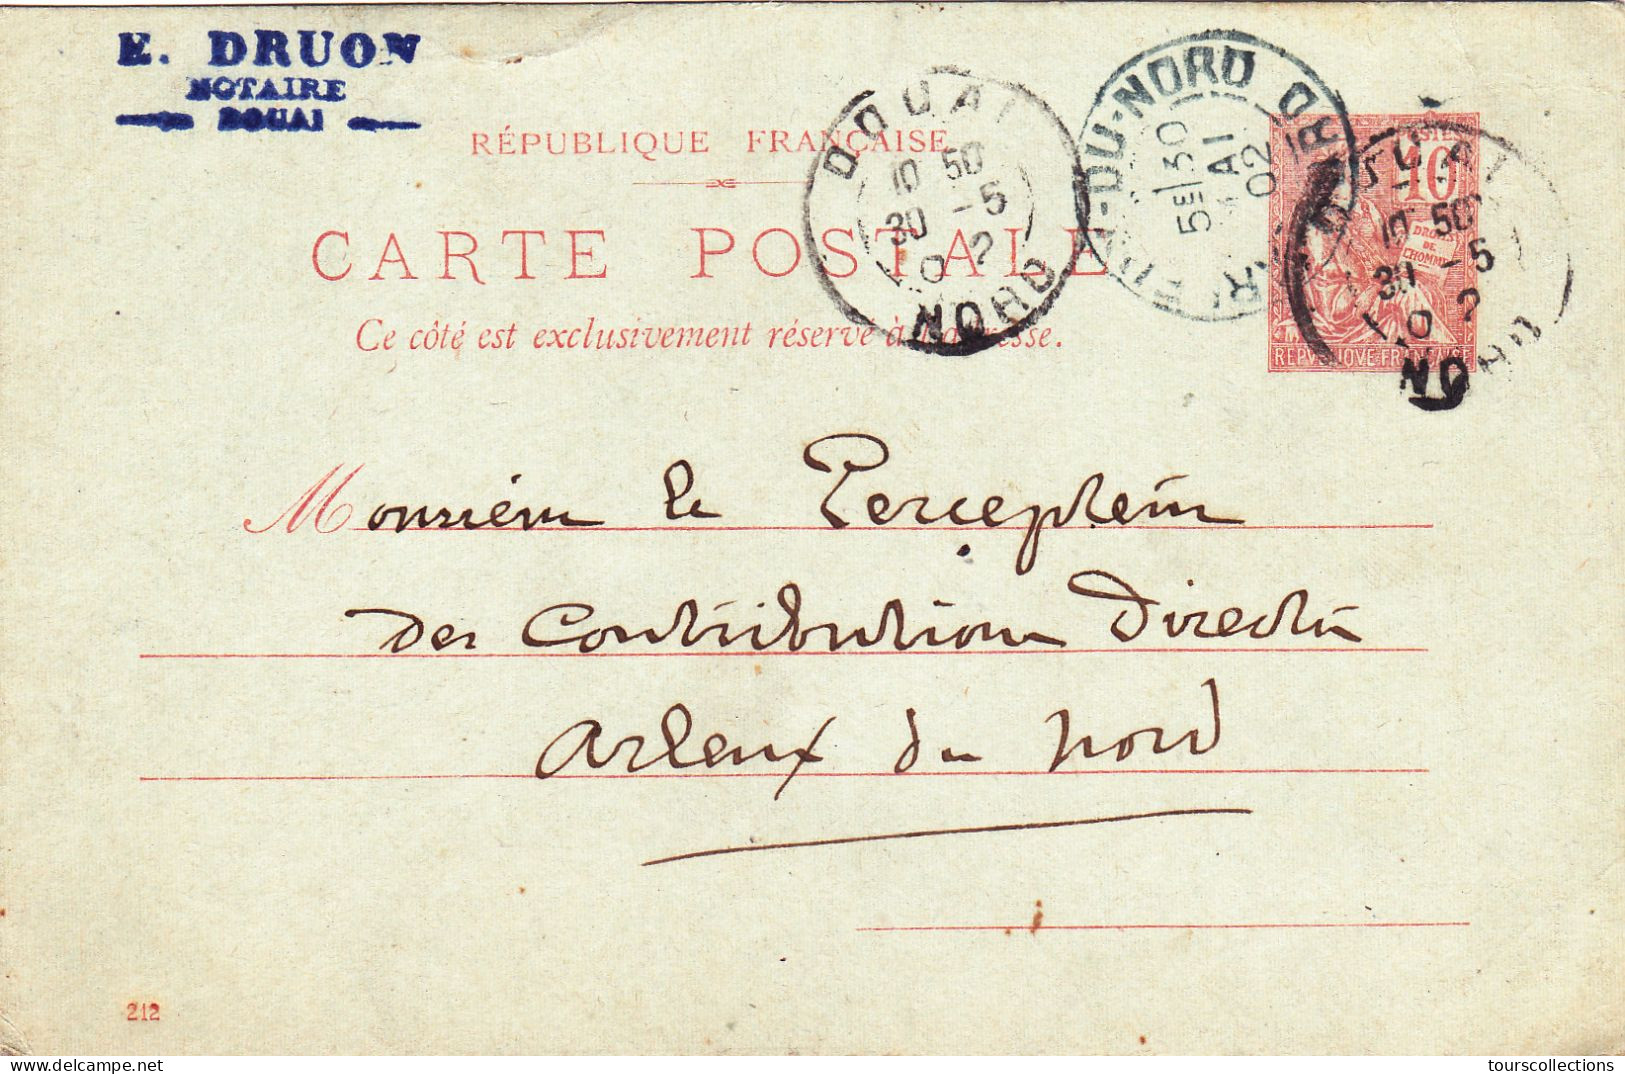 ENTIER POSTAL CARTE POSTALE De 1902 - DOUAI à ARLEUX Nord France - E. DRUON Notaire à Mr Goichon Percepteur Impots - Cartes Précurseurs